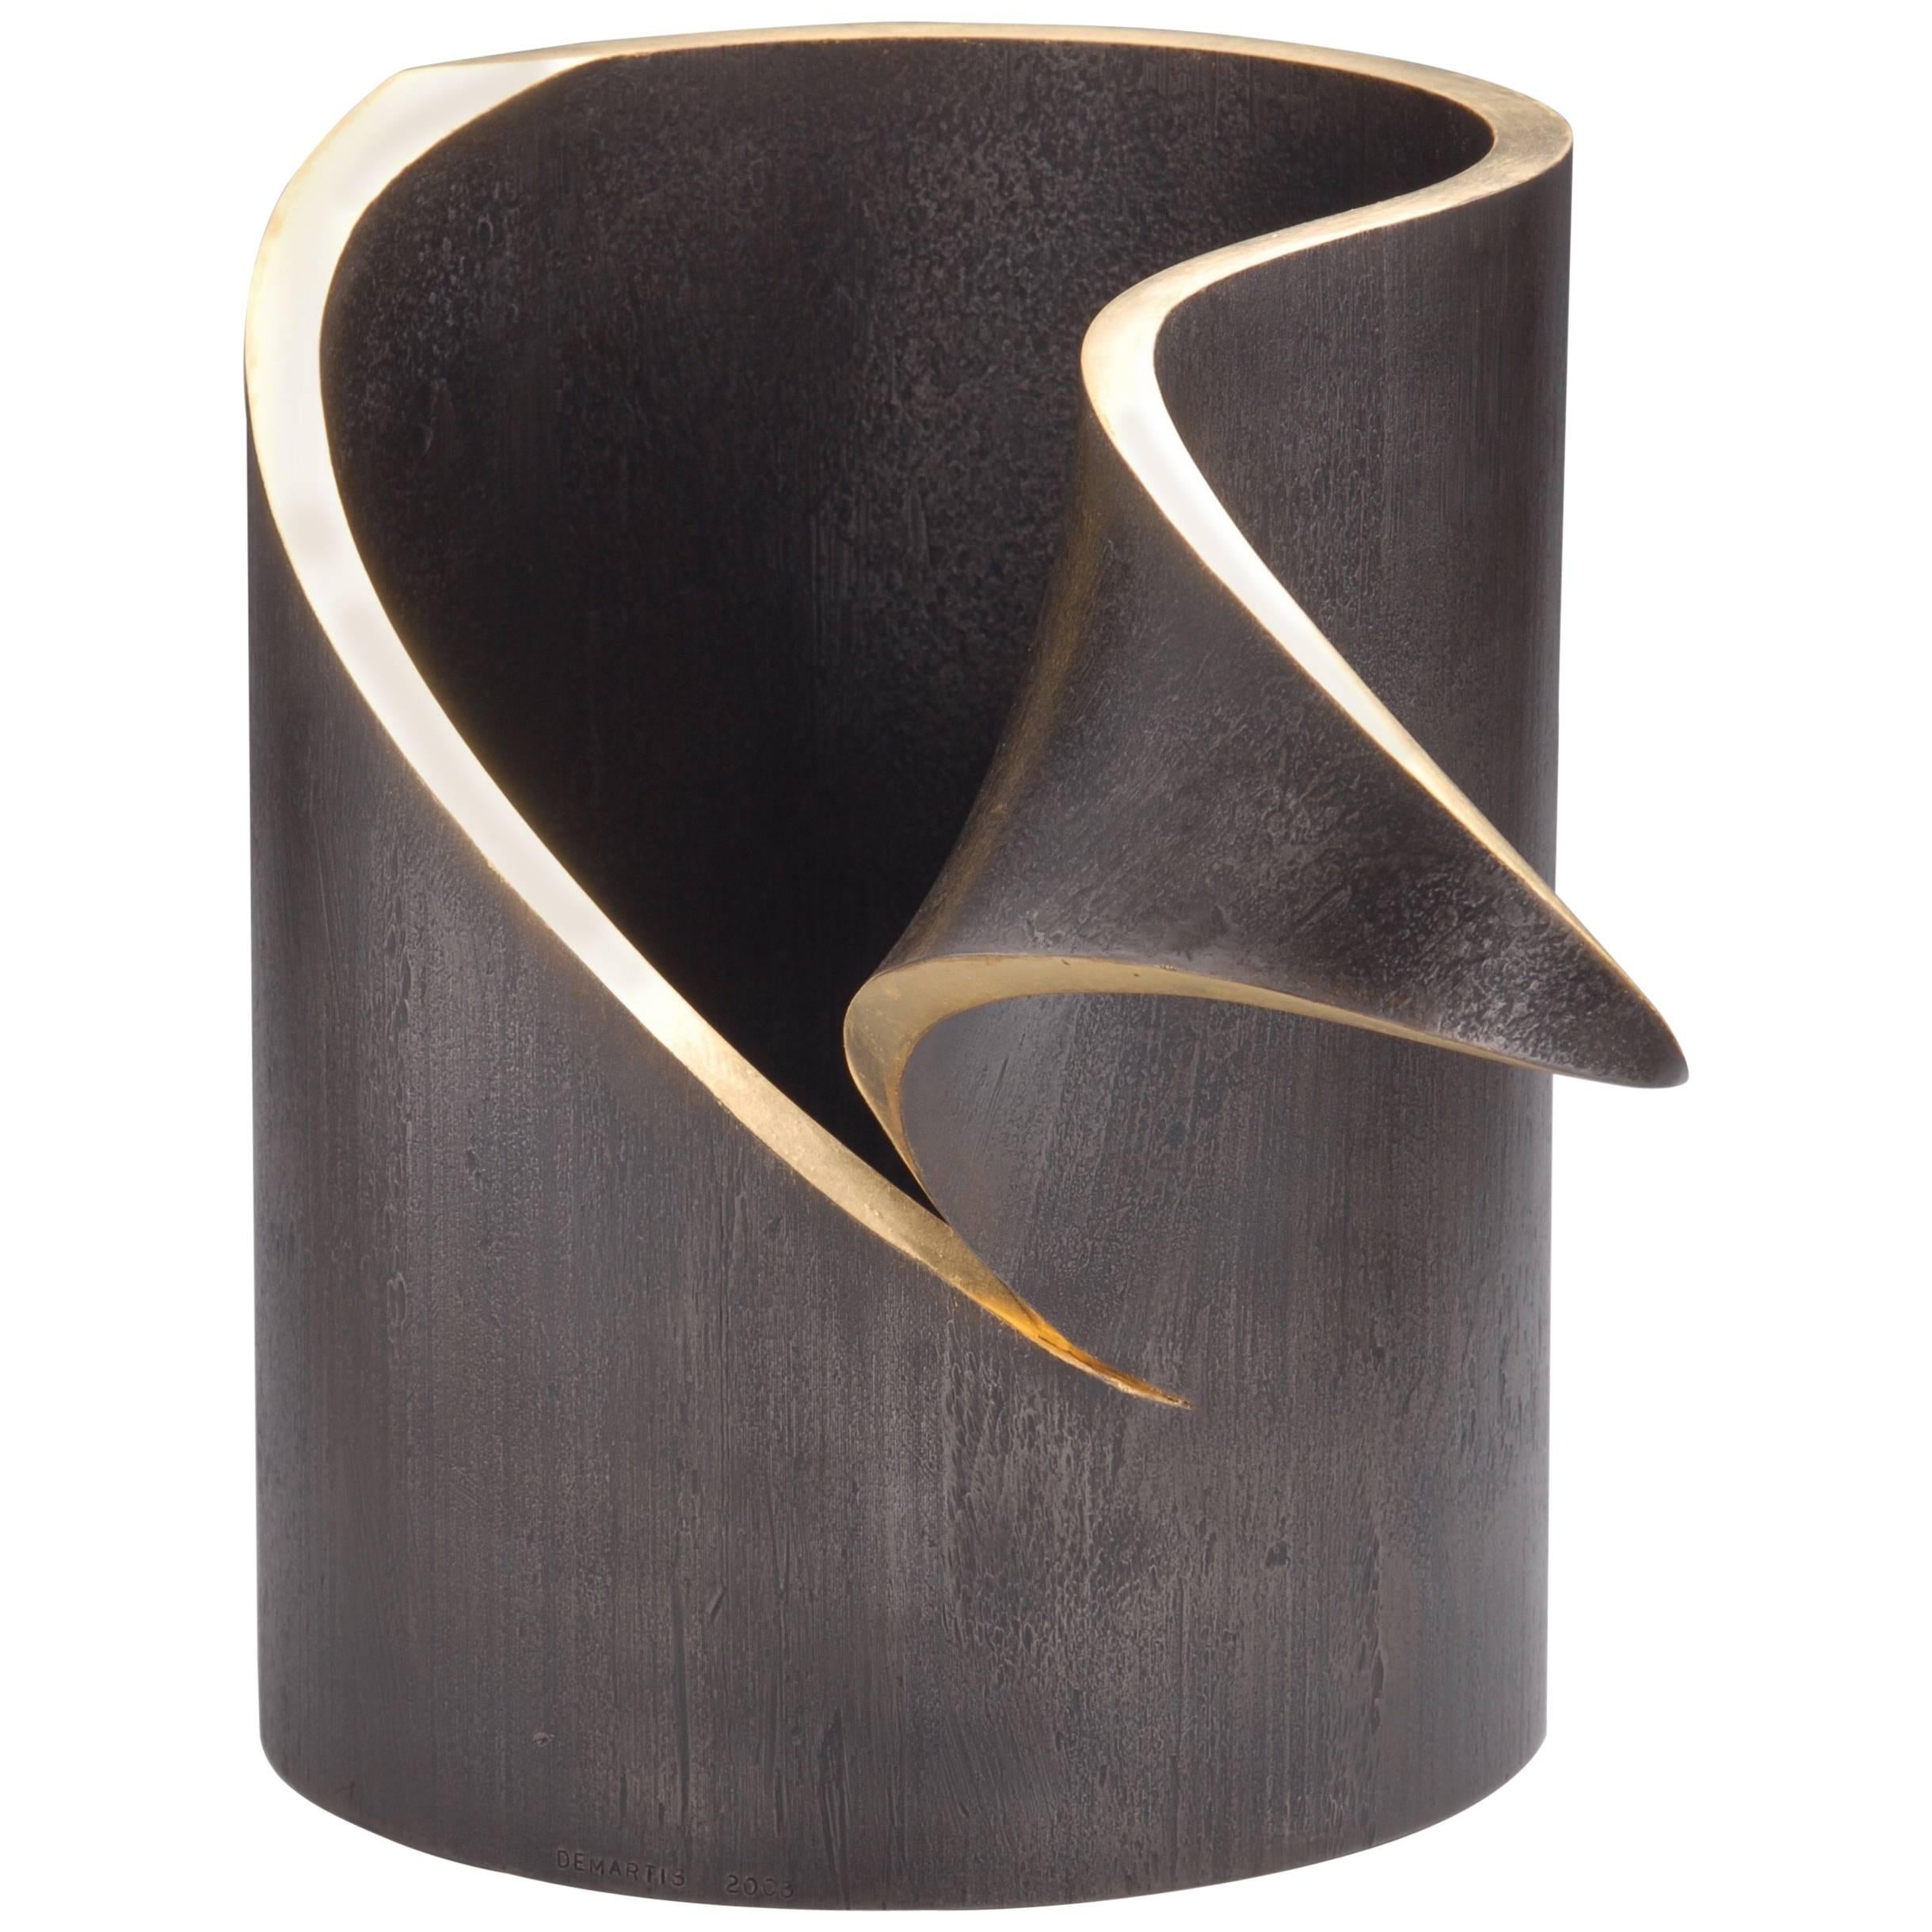 Sculpture minimaliste de table sur piédestal en acier forgé à la main avec feuille d'or, unique en son genre